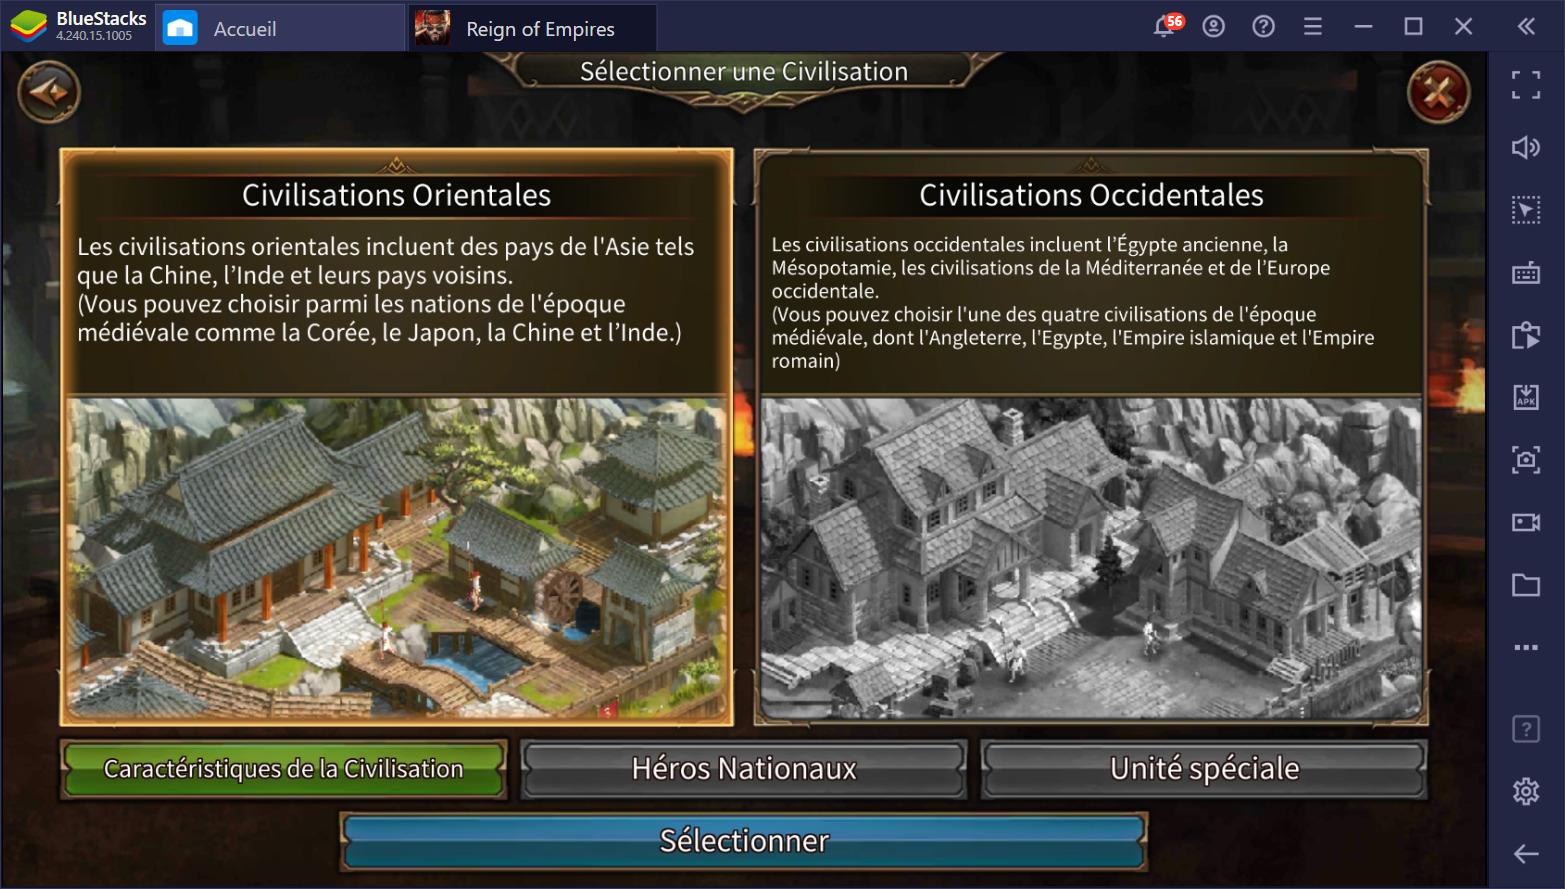 Jouer à Reign of Empires – Un RTS tactique aux batailles épiques disponible sur PC avec BlueStacks